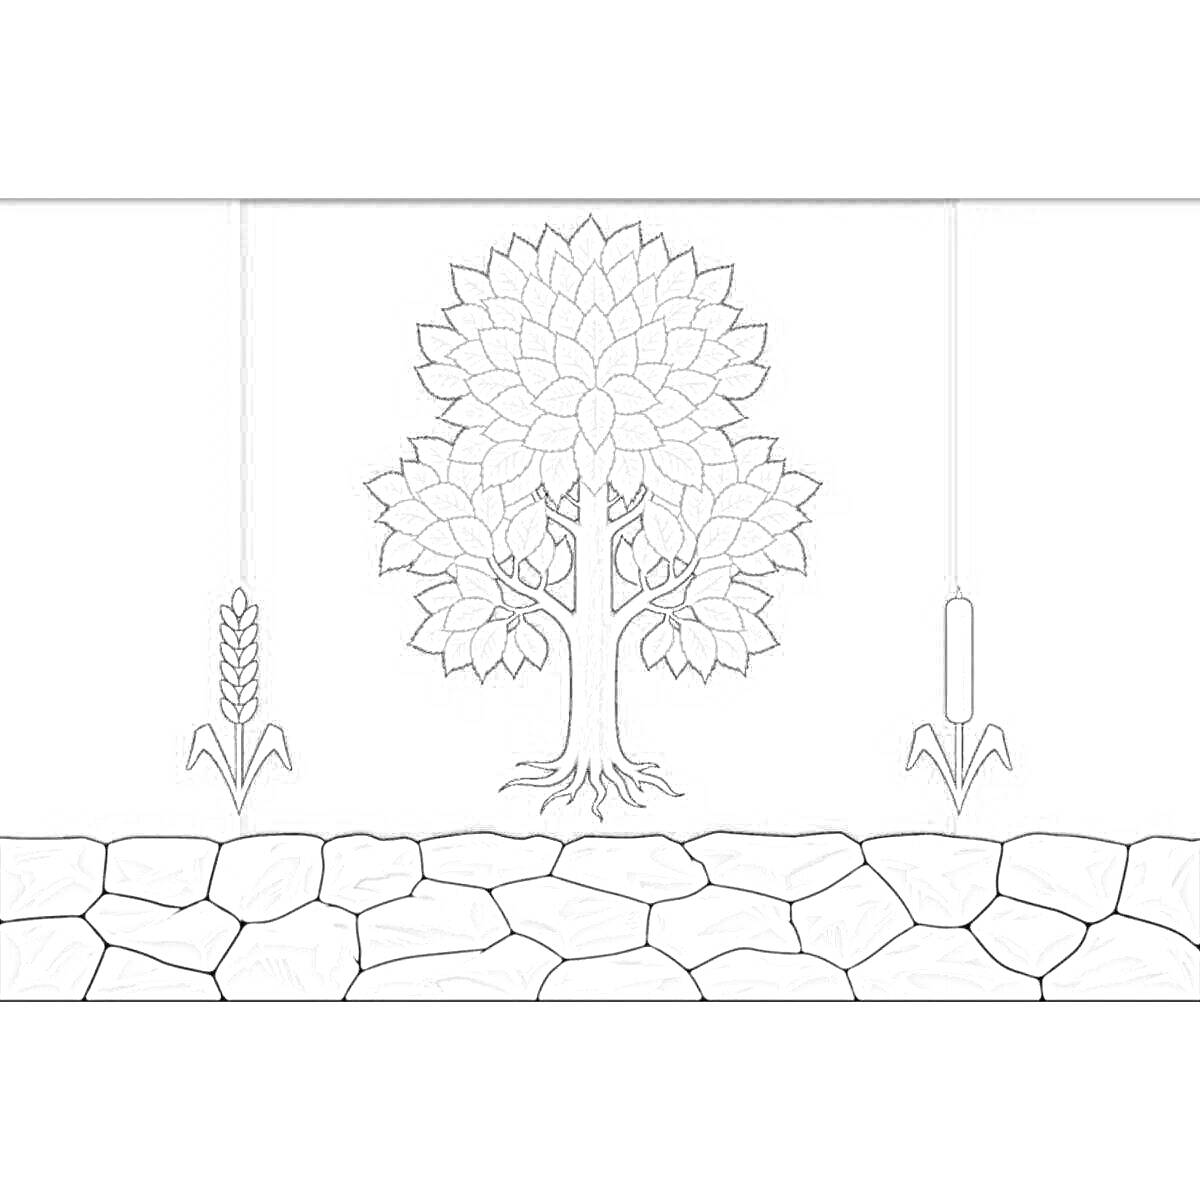 Герб Кузбасса с деревом в центре, колосом пшеницы слева и тростником справа, на фоне каменной кладки